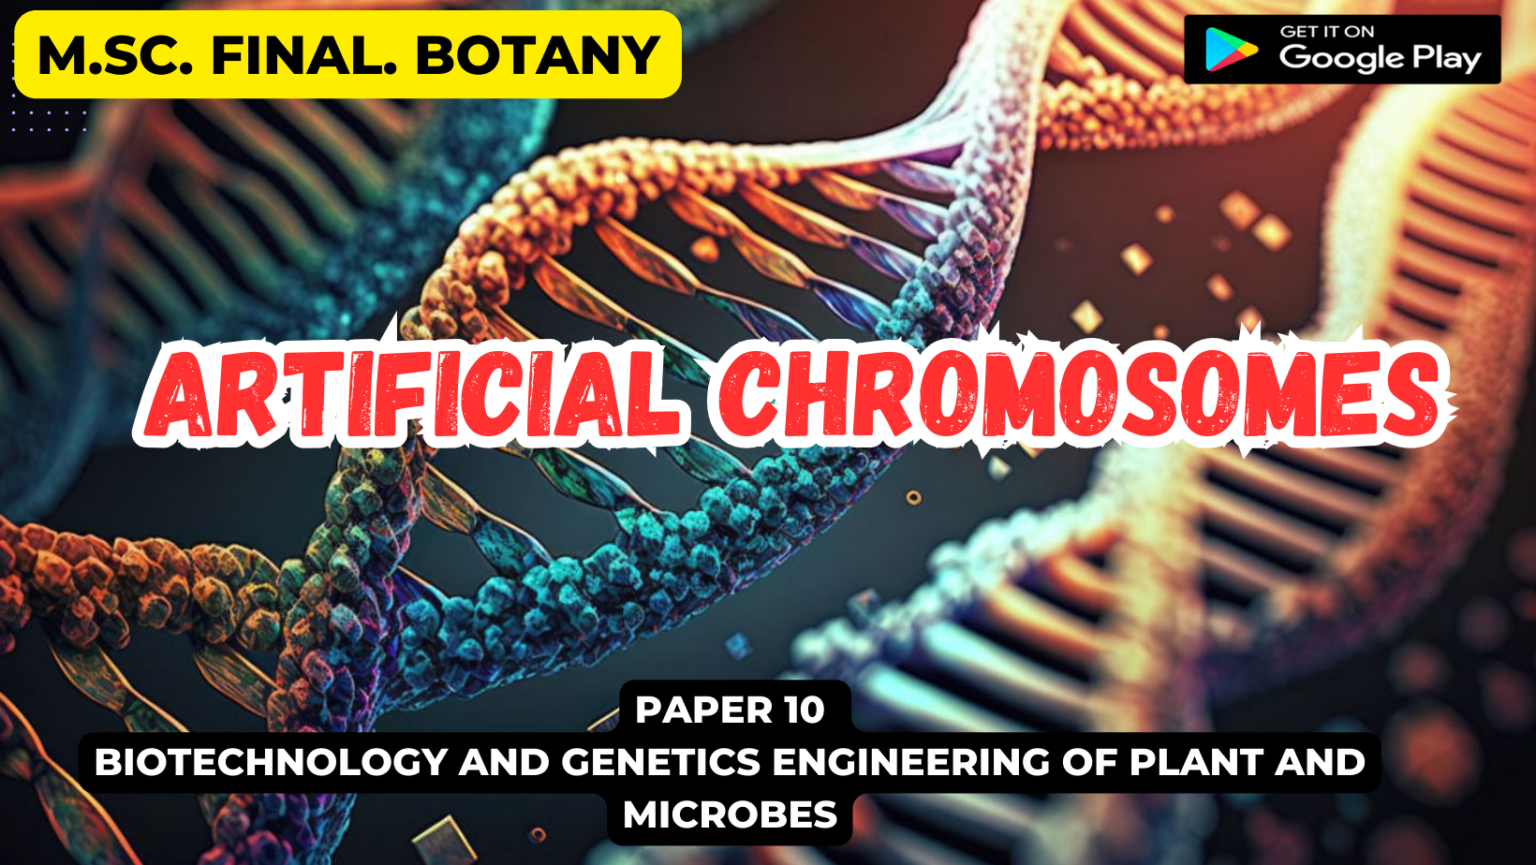 Artificial chromosomes